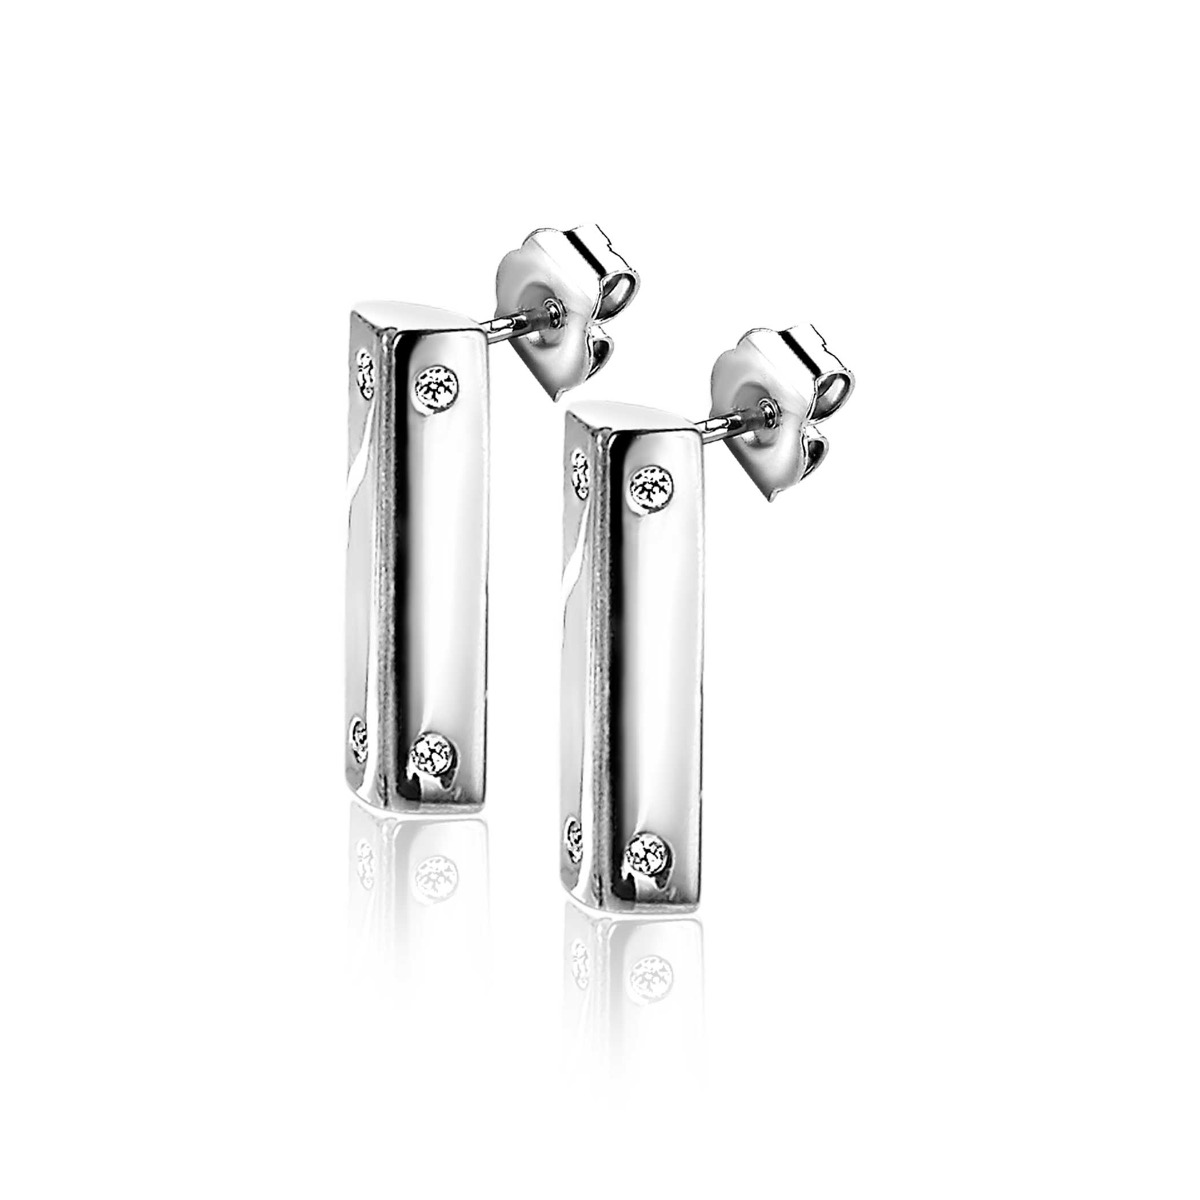 ZINZI Sterling Silver Earrings 12 x 4mm by Dutch Designer Mart Visser MVO21